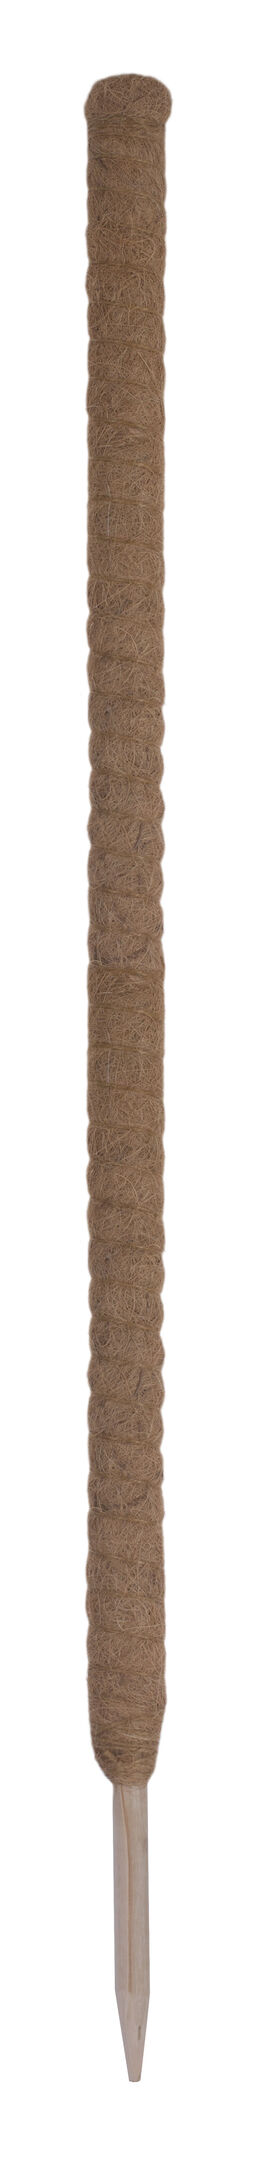 Kasvituki kookoskuitua Korkeus 120 cm Ruskea | Plantagen